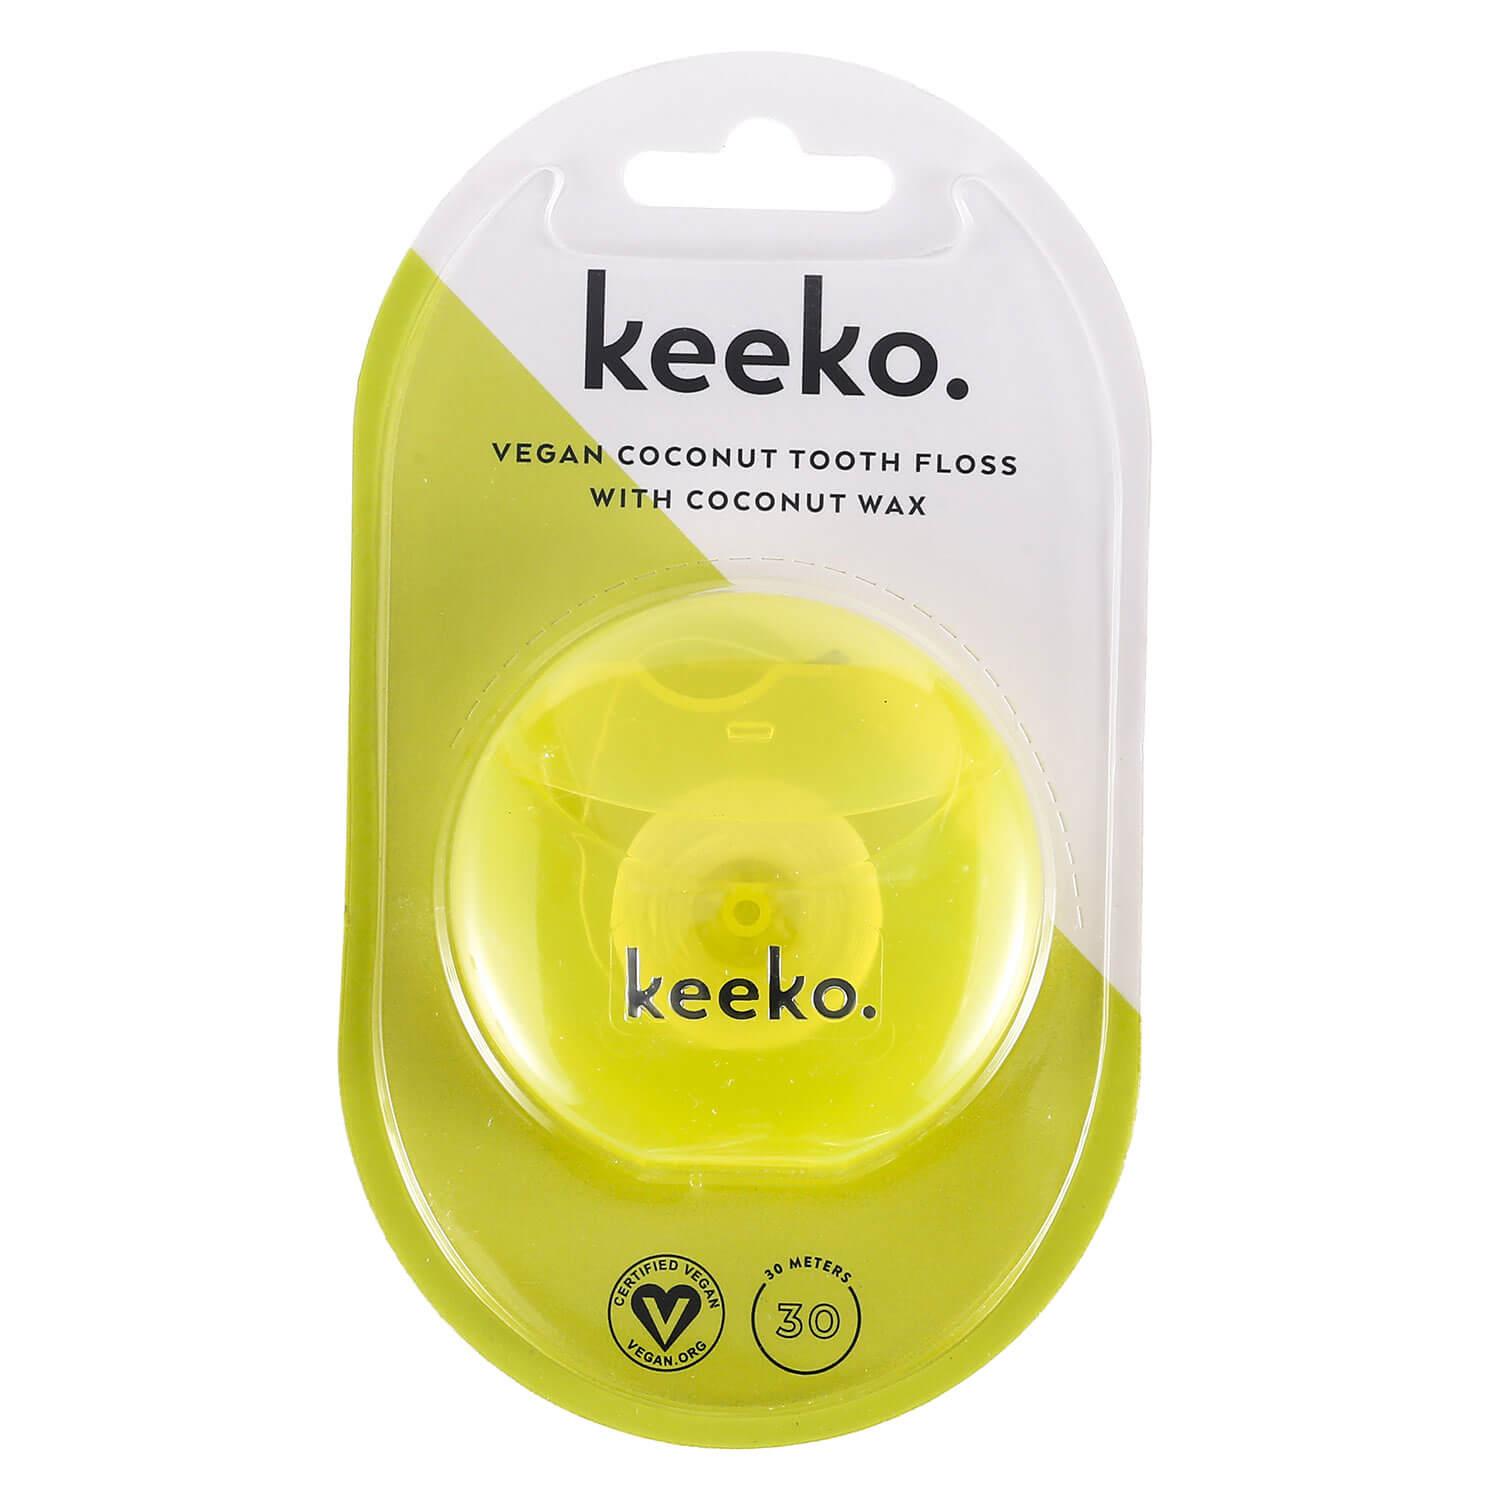 keeko - Coconut tooth Floss